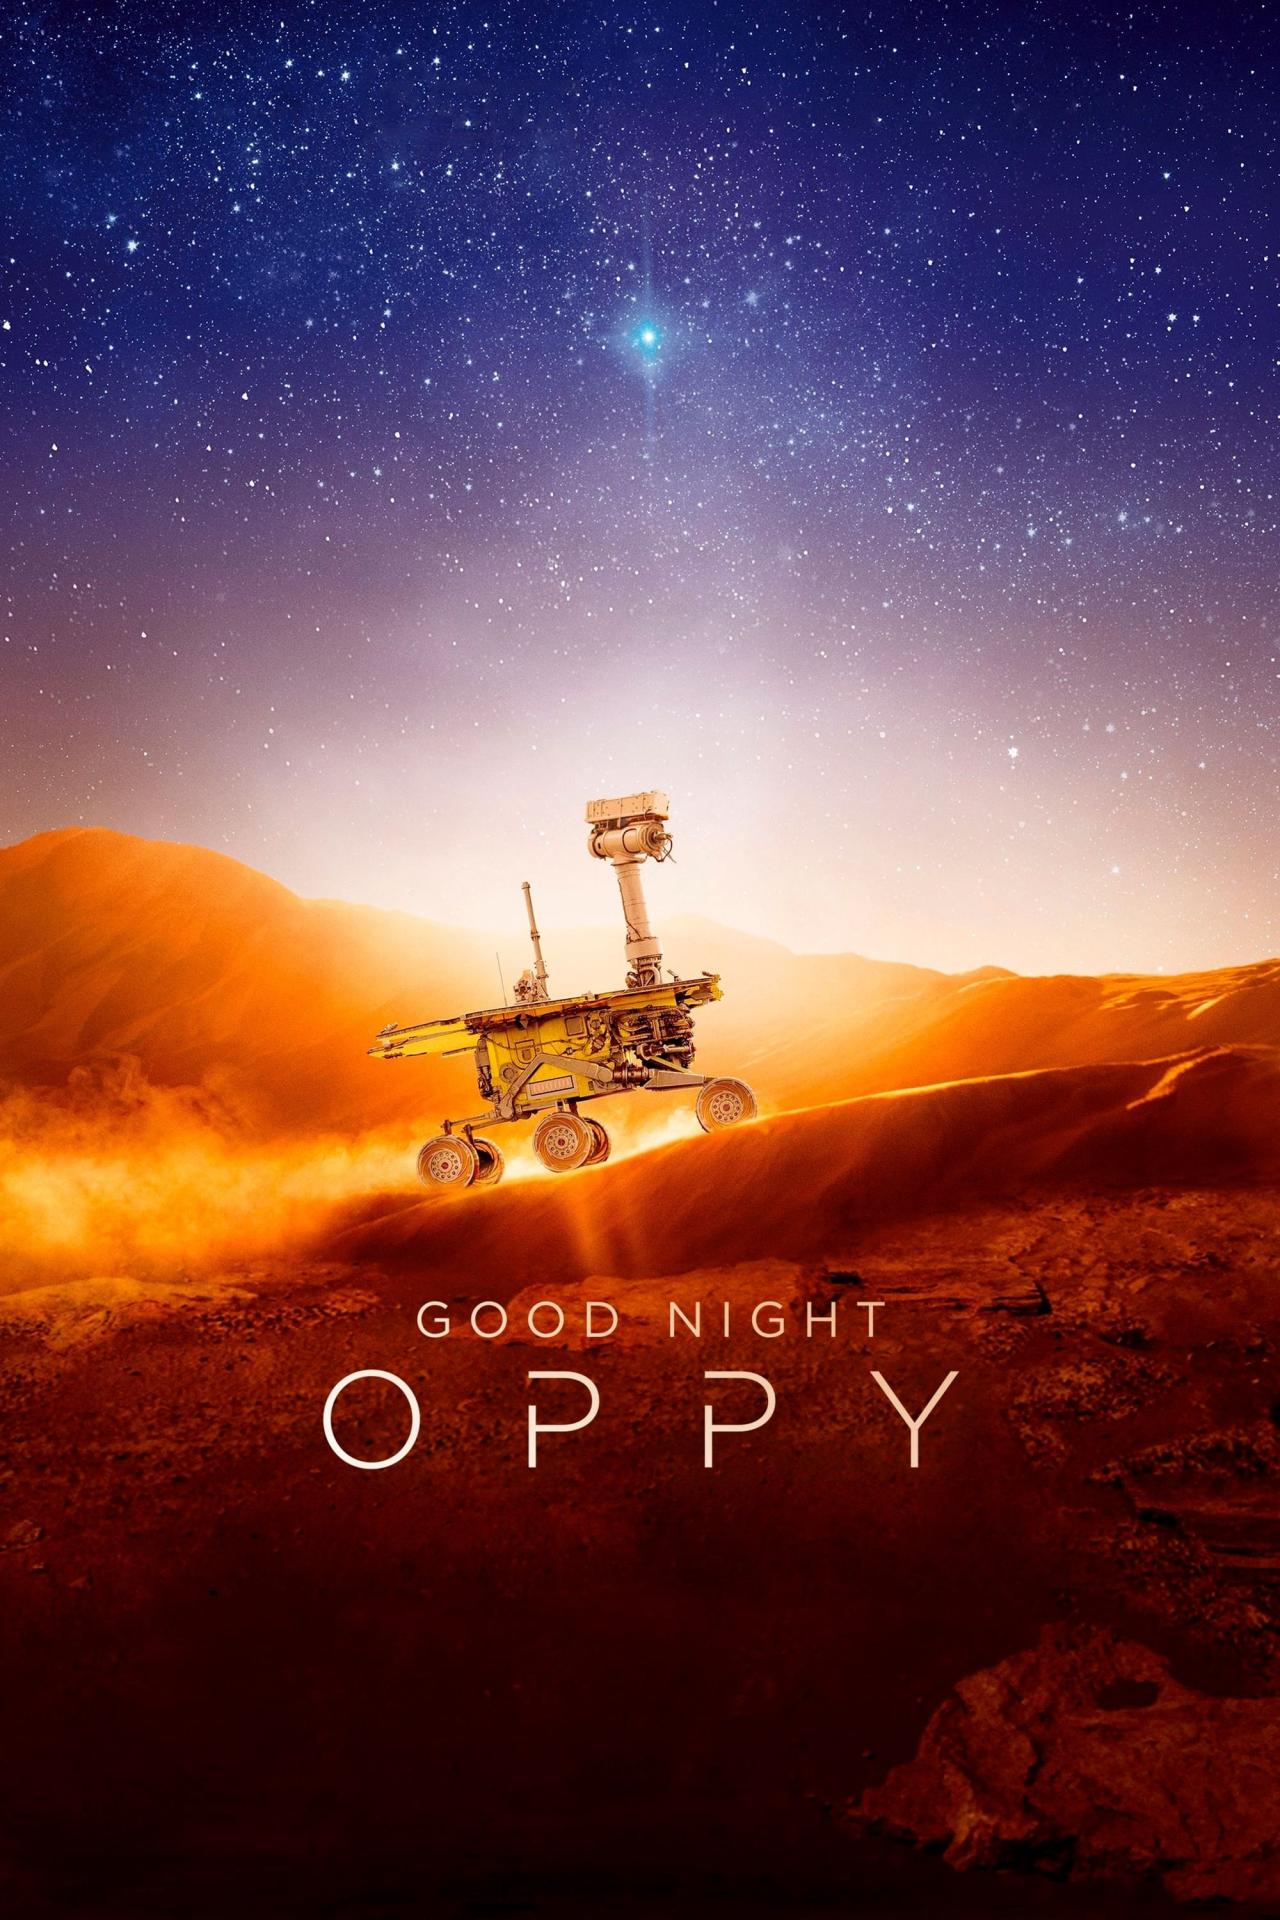 Bonne nuit Oppy est-il disponible sur Netflix ou autre ?